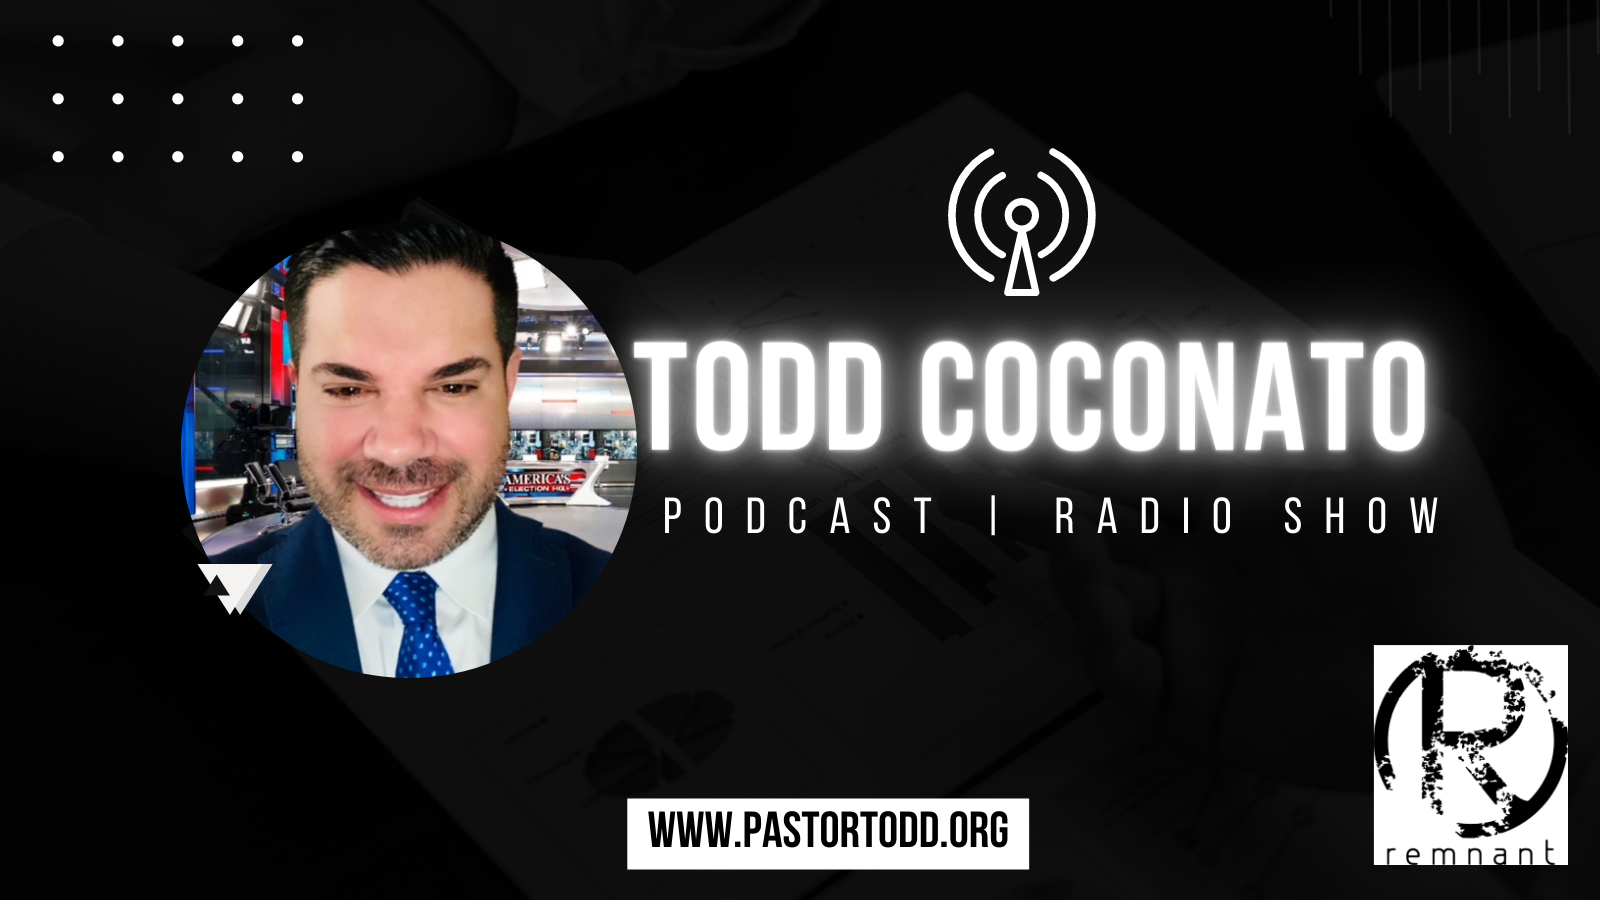 Todd Coconato Podcast— The Remnant